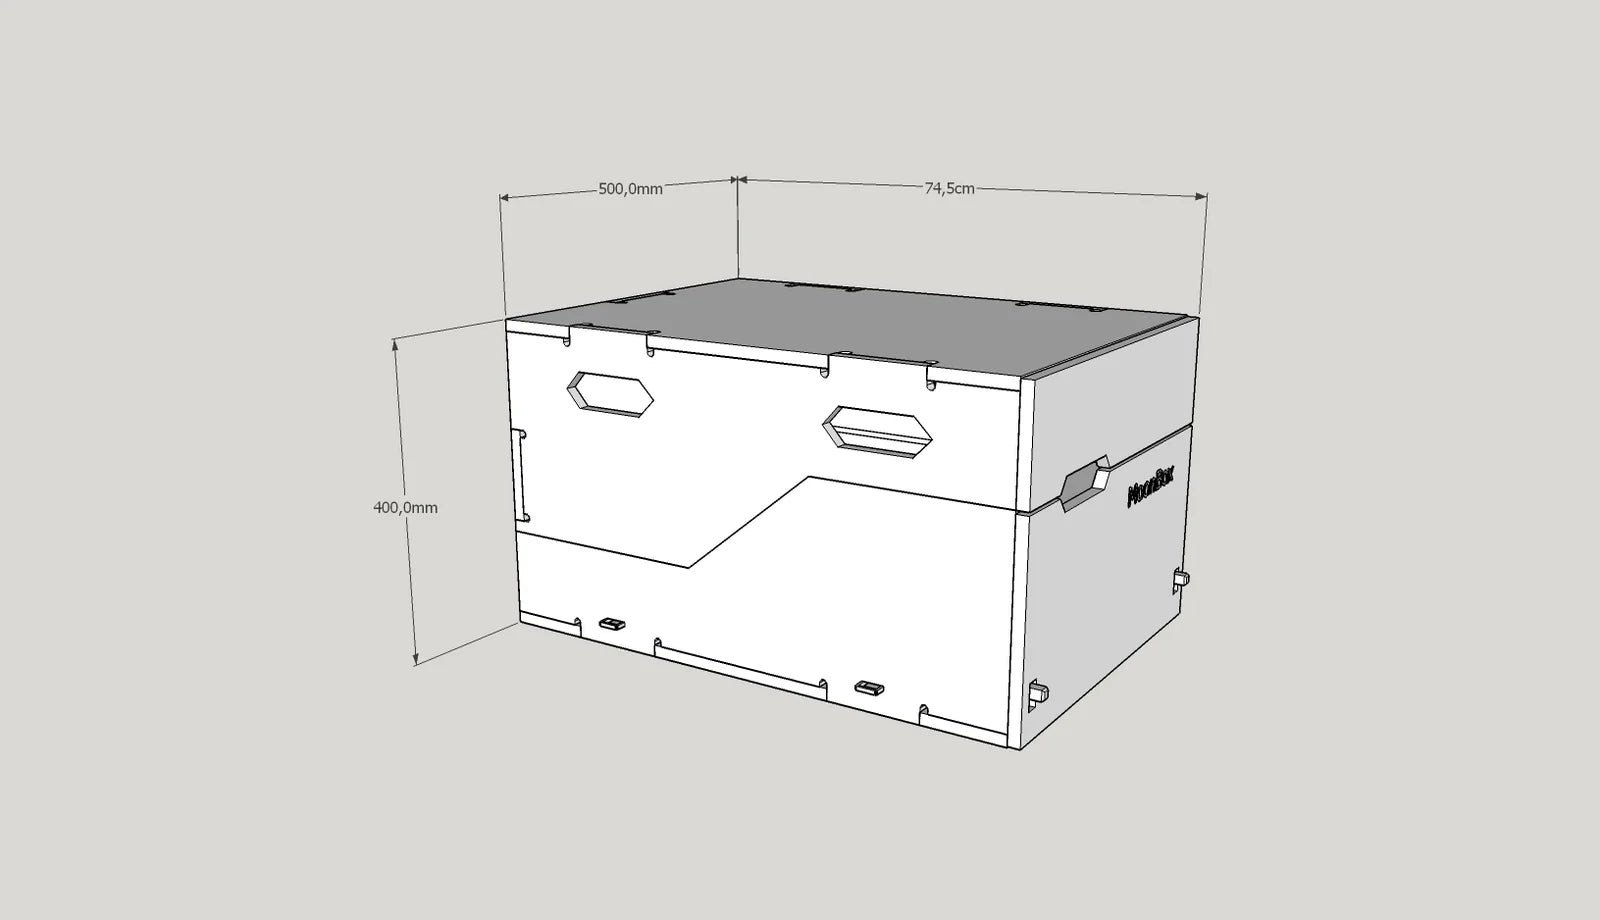 MoonBox KitchenBox - Bärbar kökslåda 